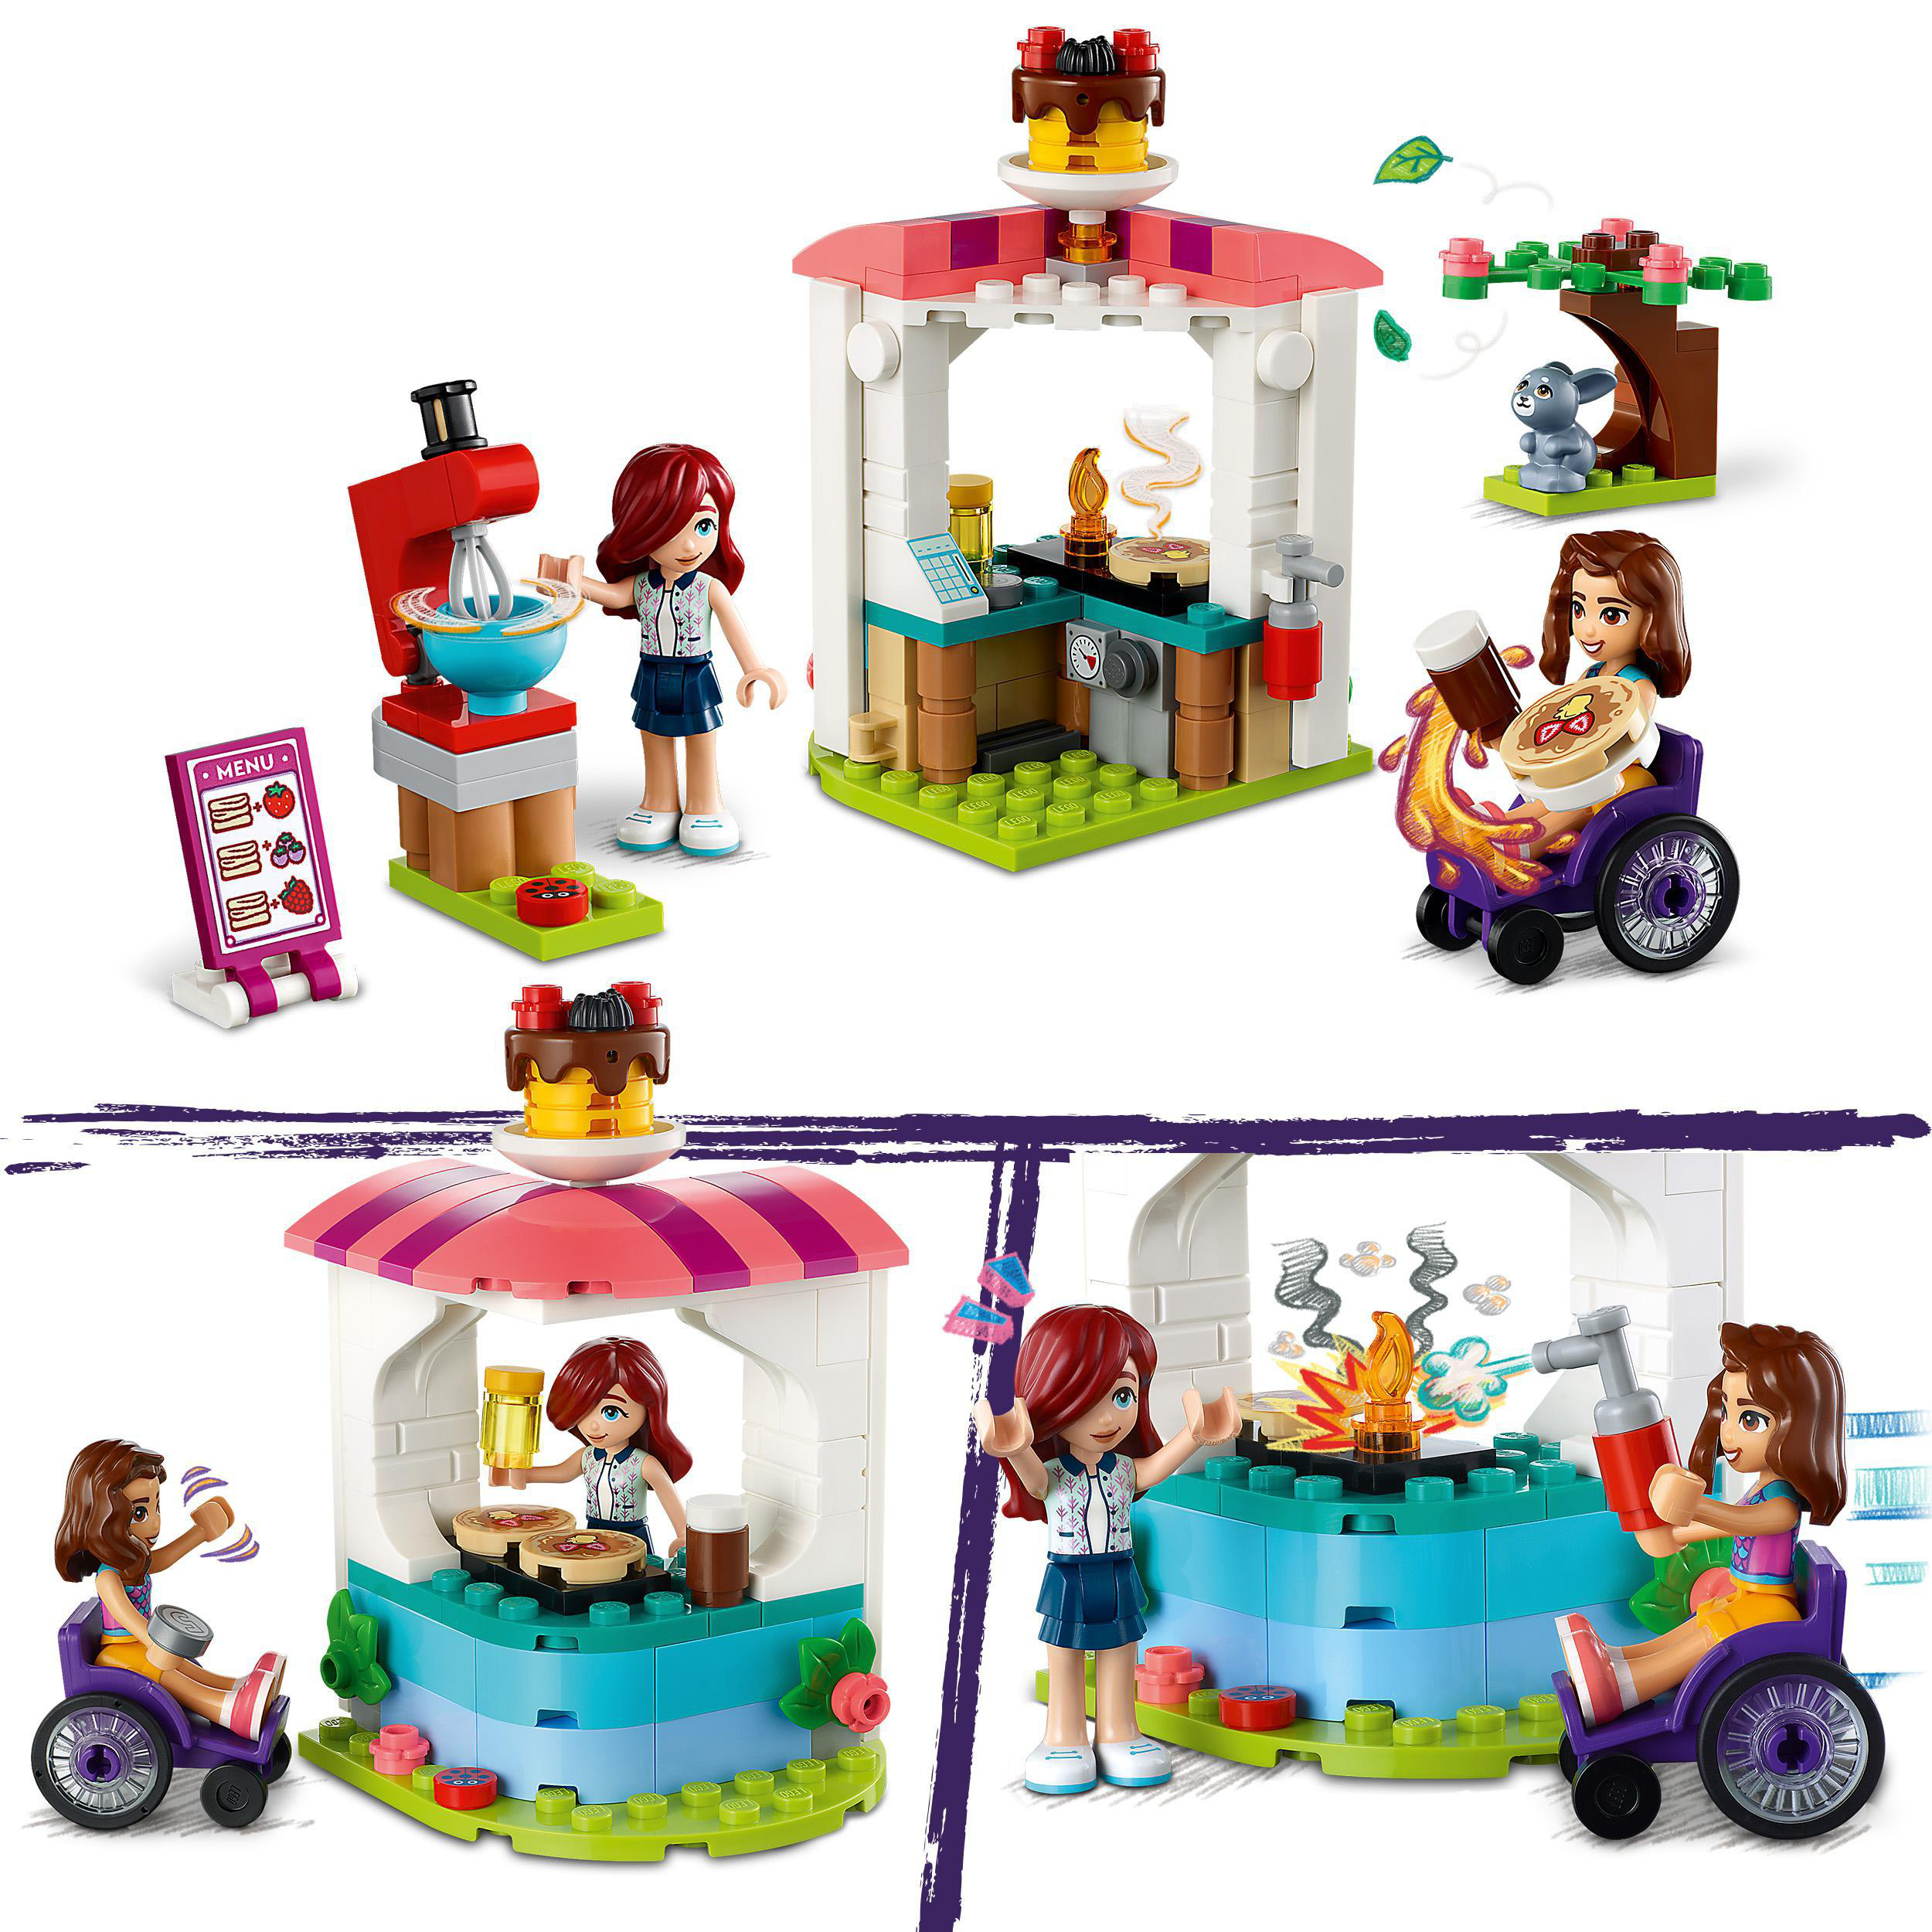 Bausatz, 41753 Friends Pfannkuchen-Shop LEGO Mehrfarbig